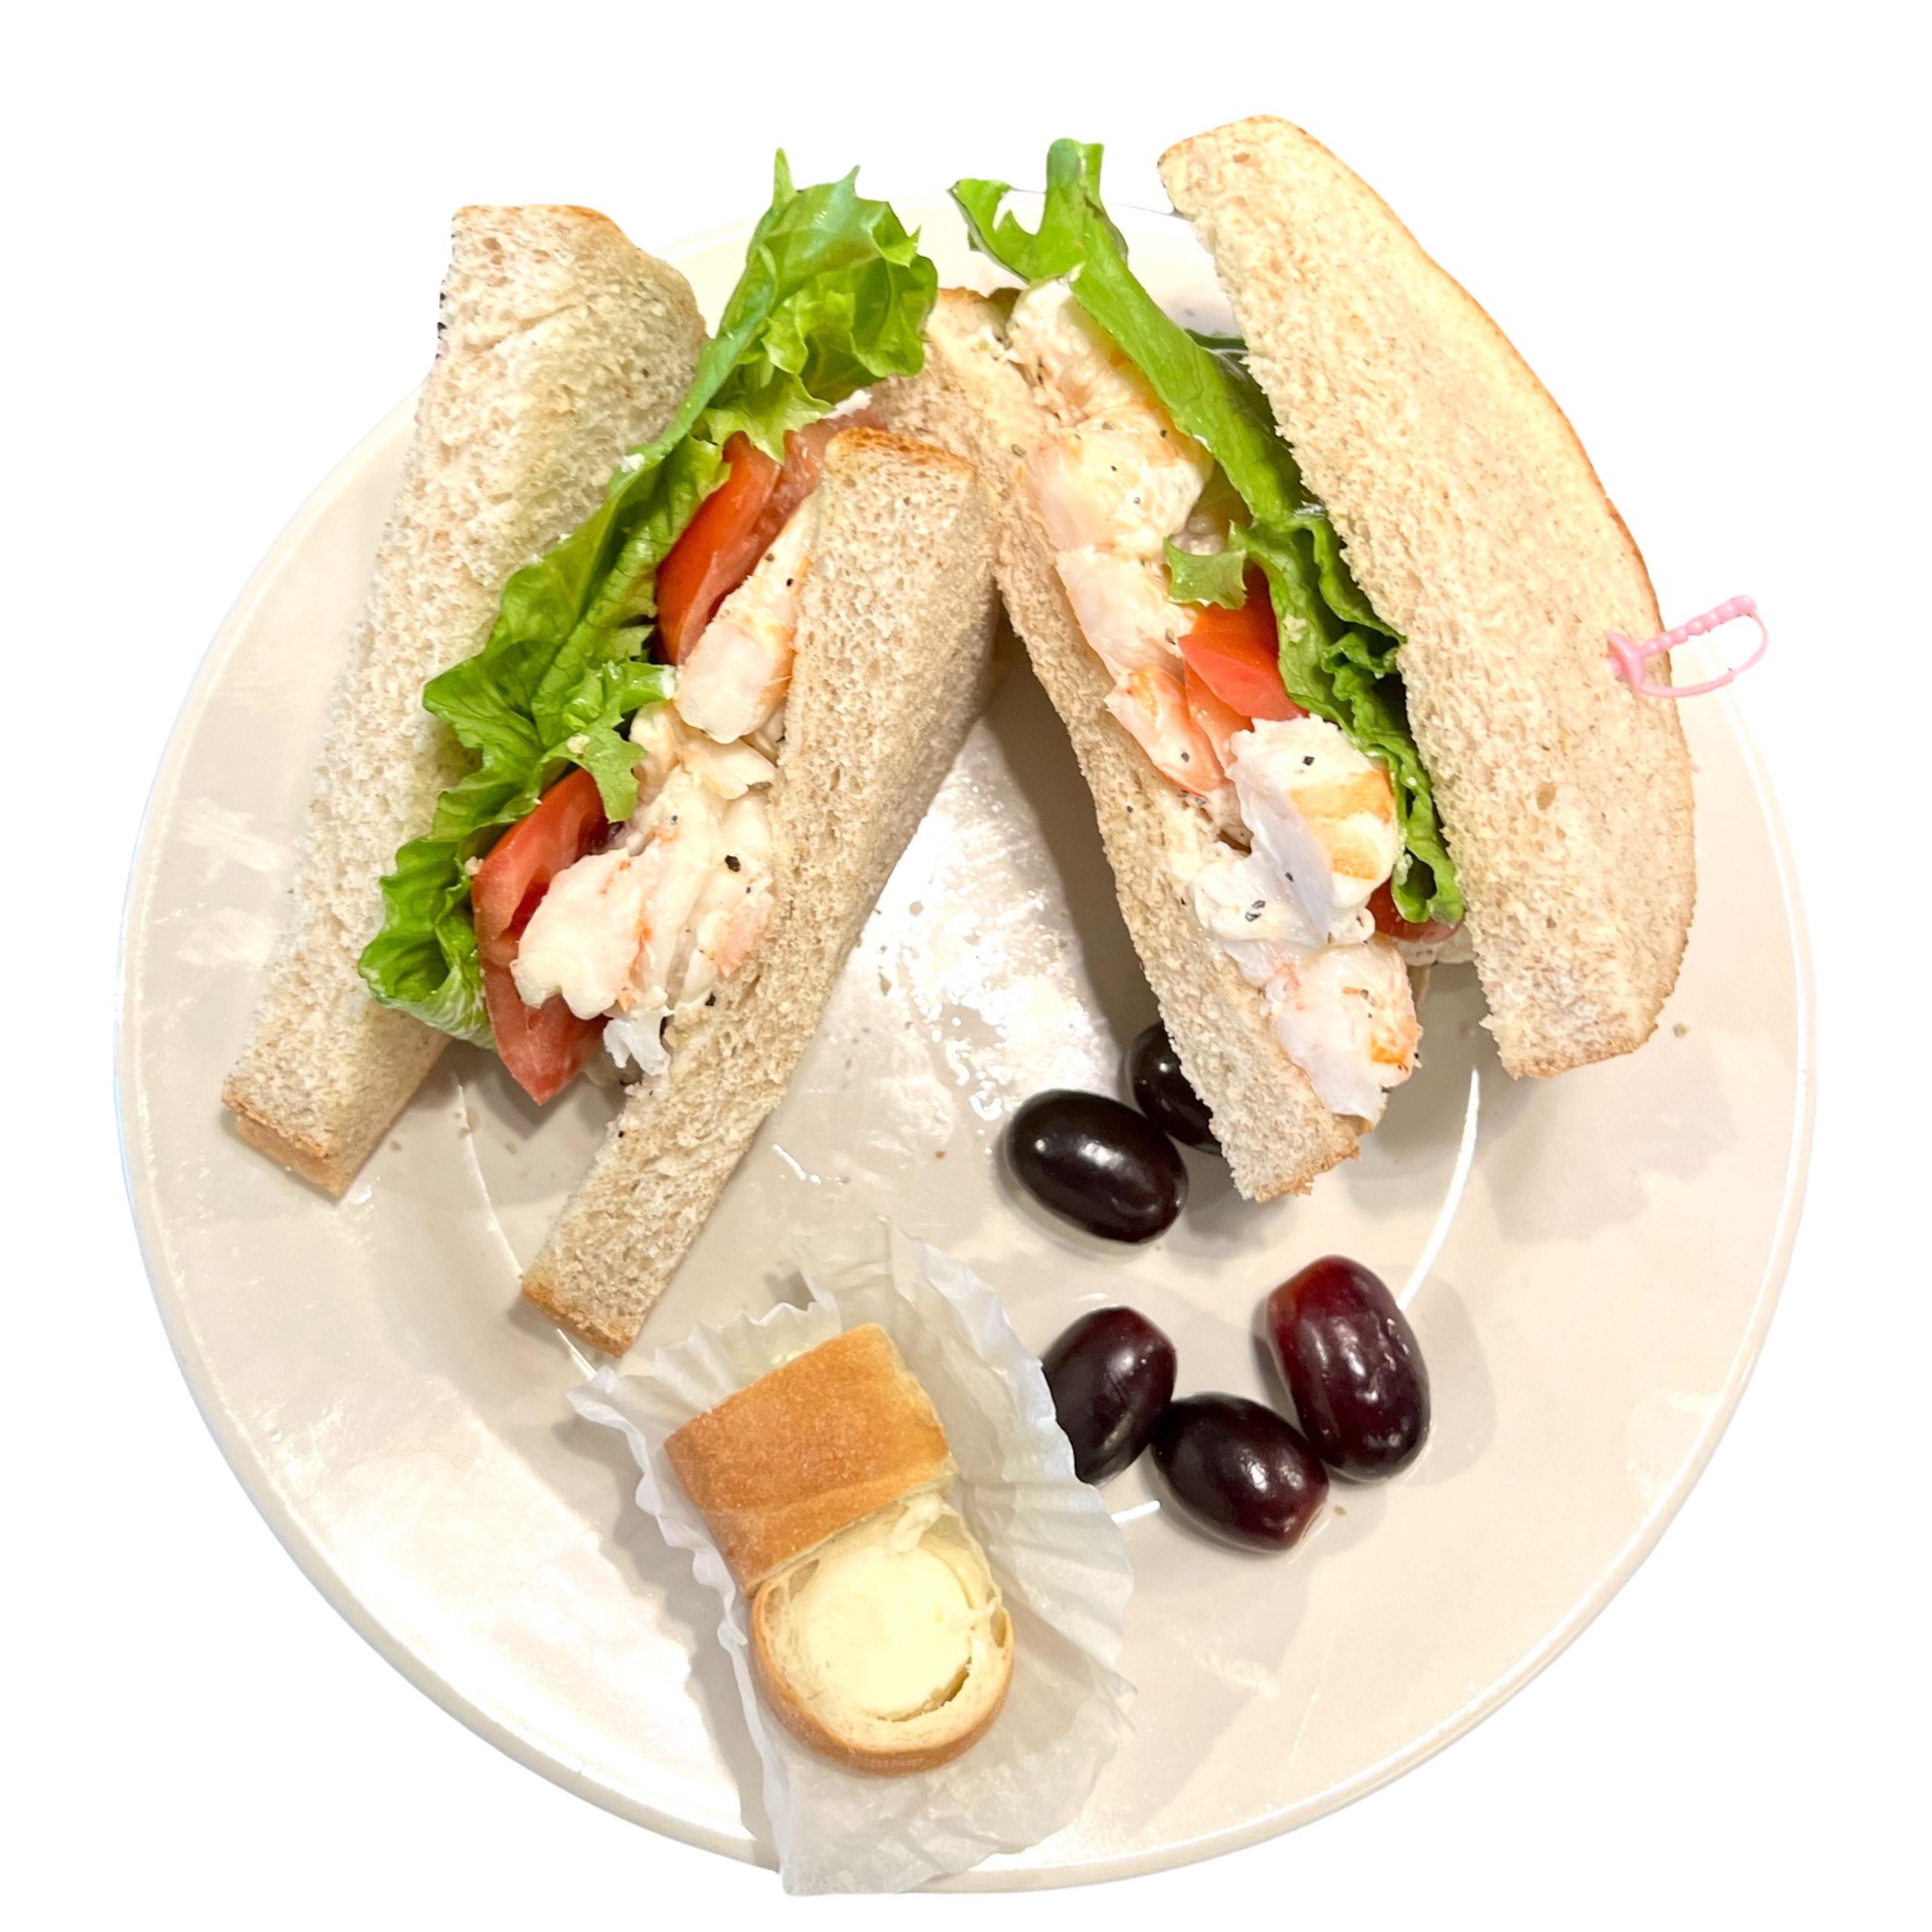 Shrimp Sandwich